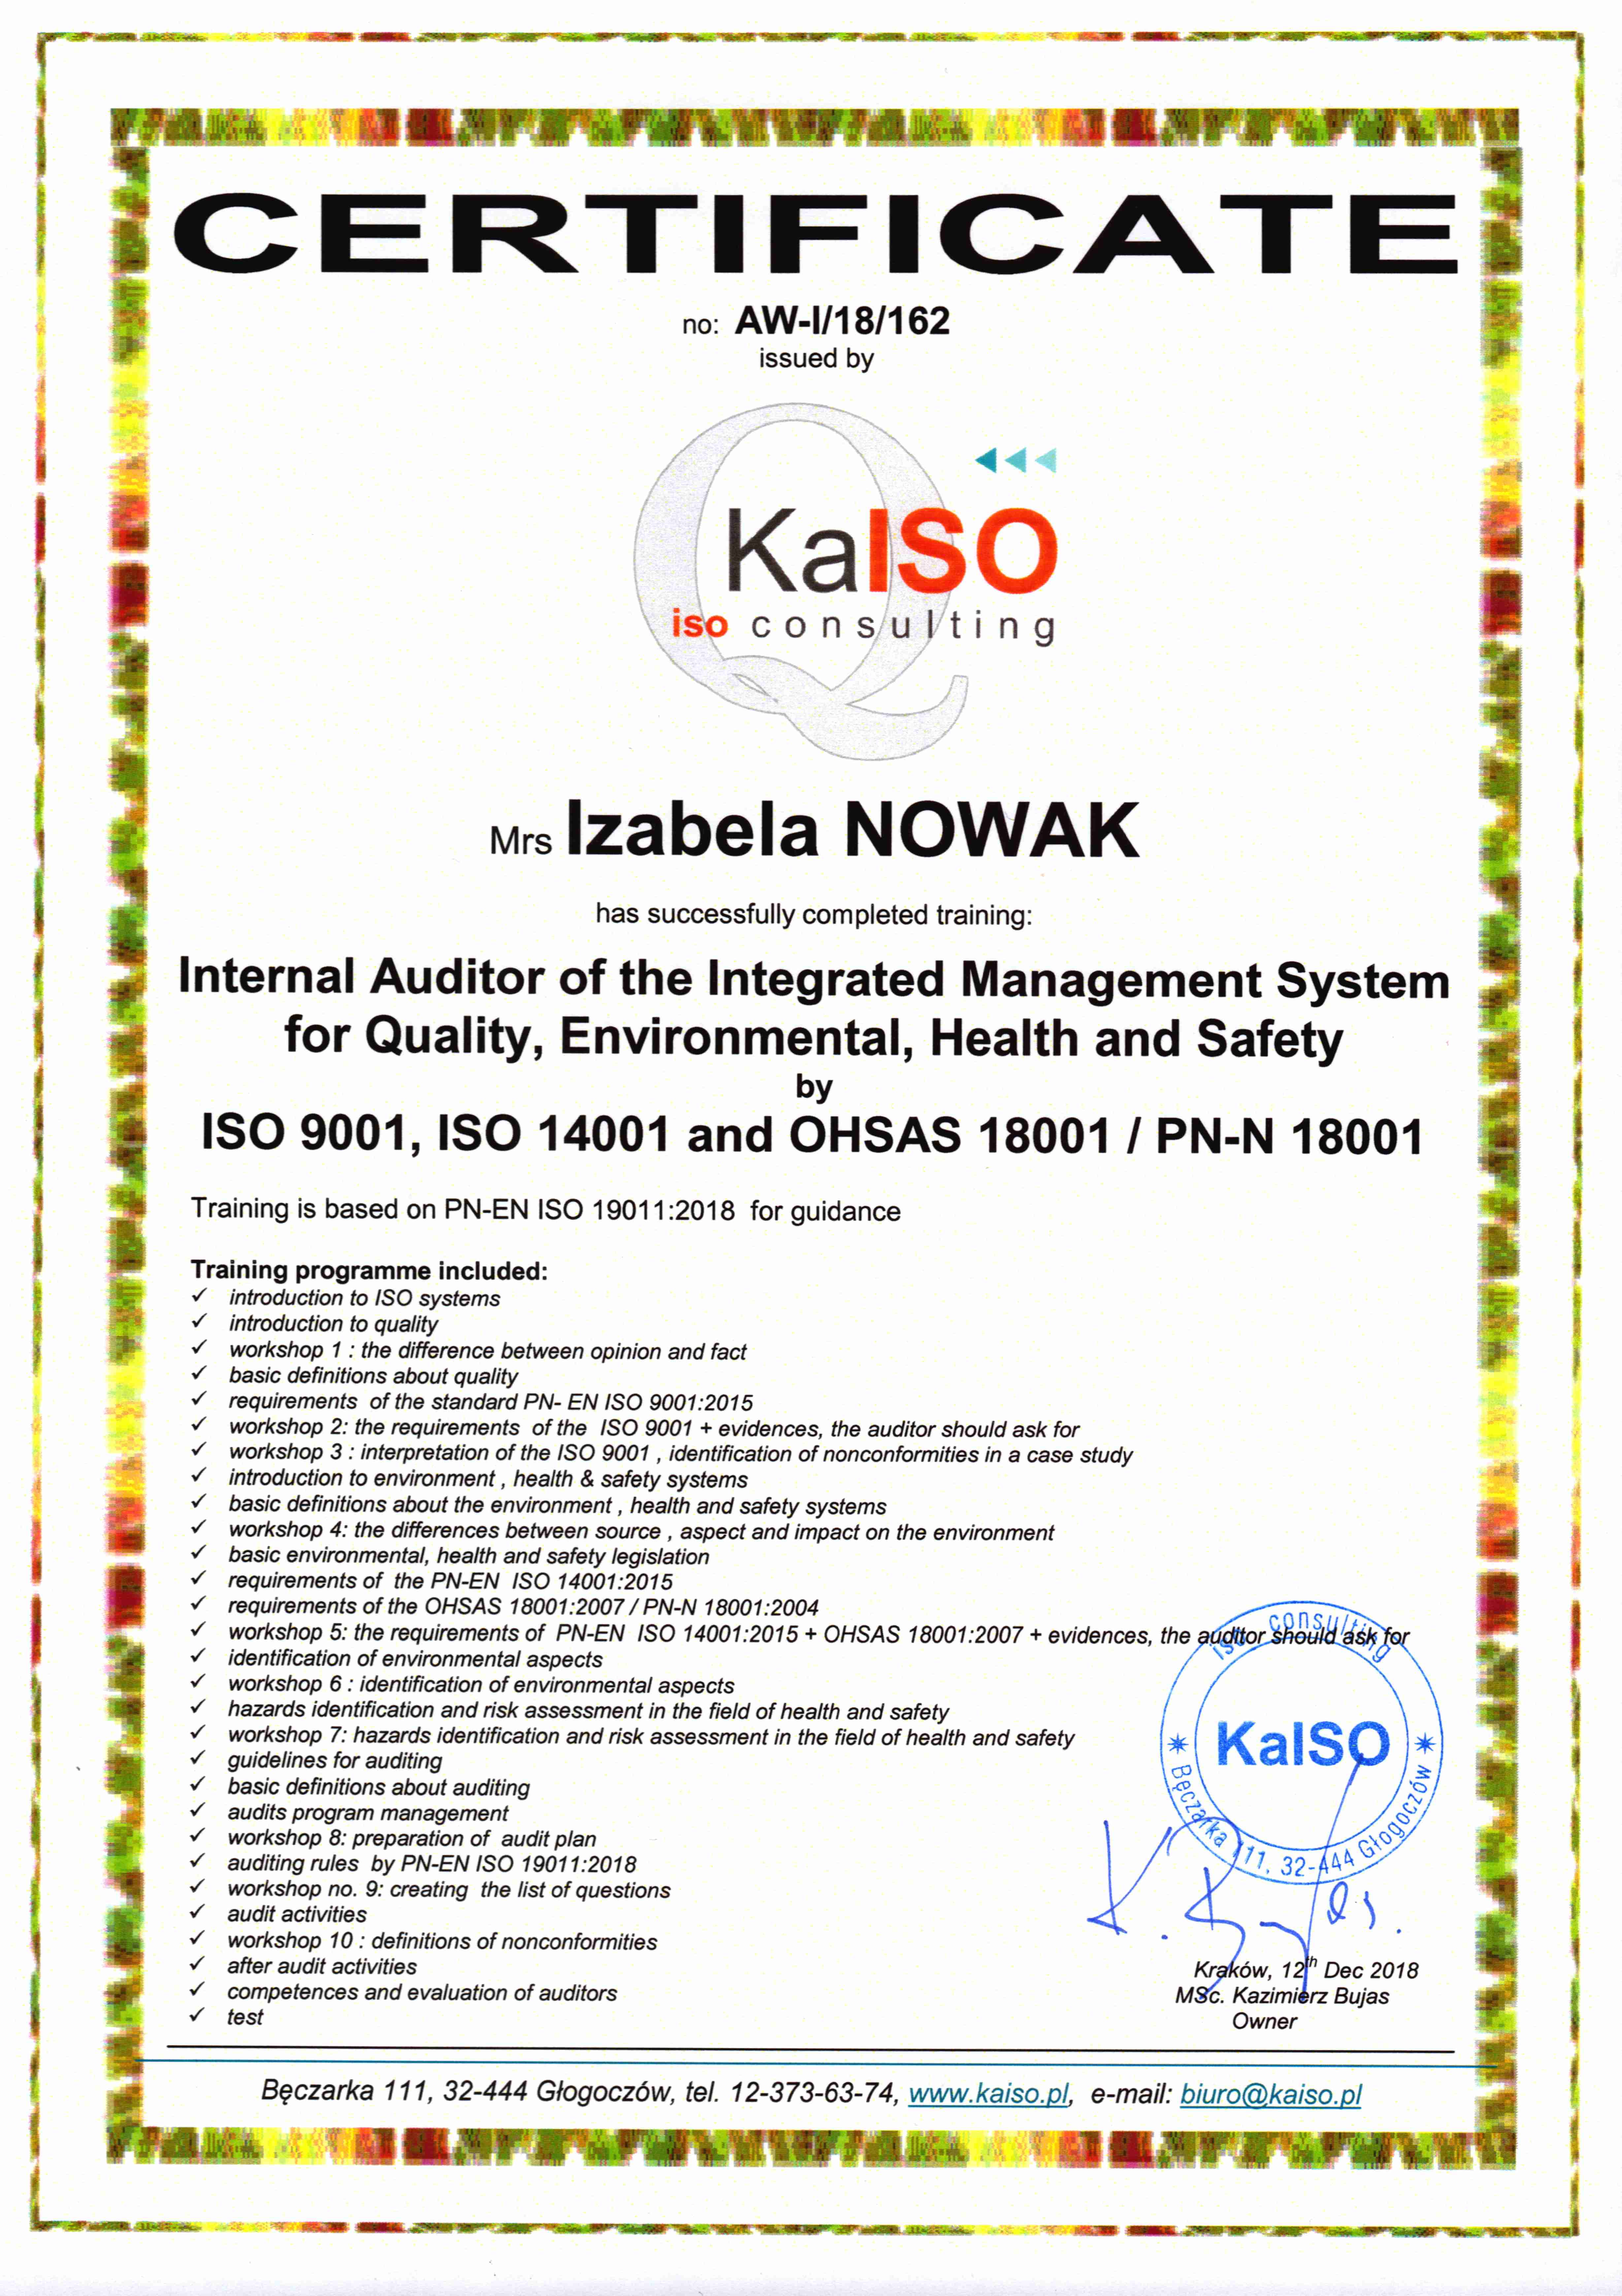 Certyfikat Auditora Wewnętrznego Zintegrowanego Systemu Zarządzania ISO 9001, ISO 14001 i OHSAS 18001